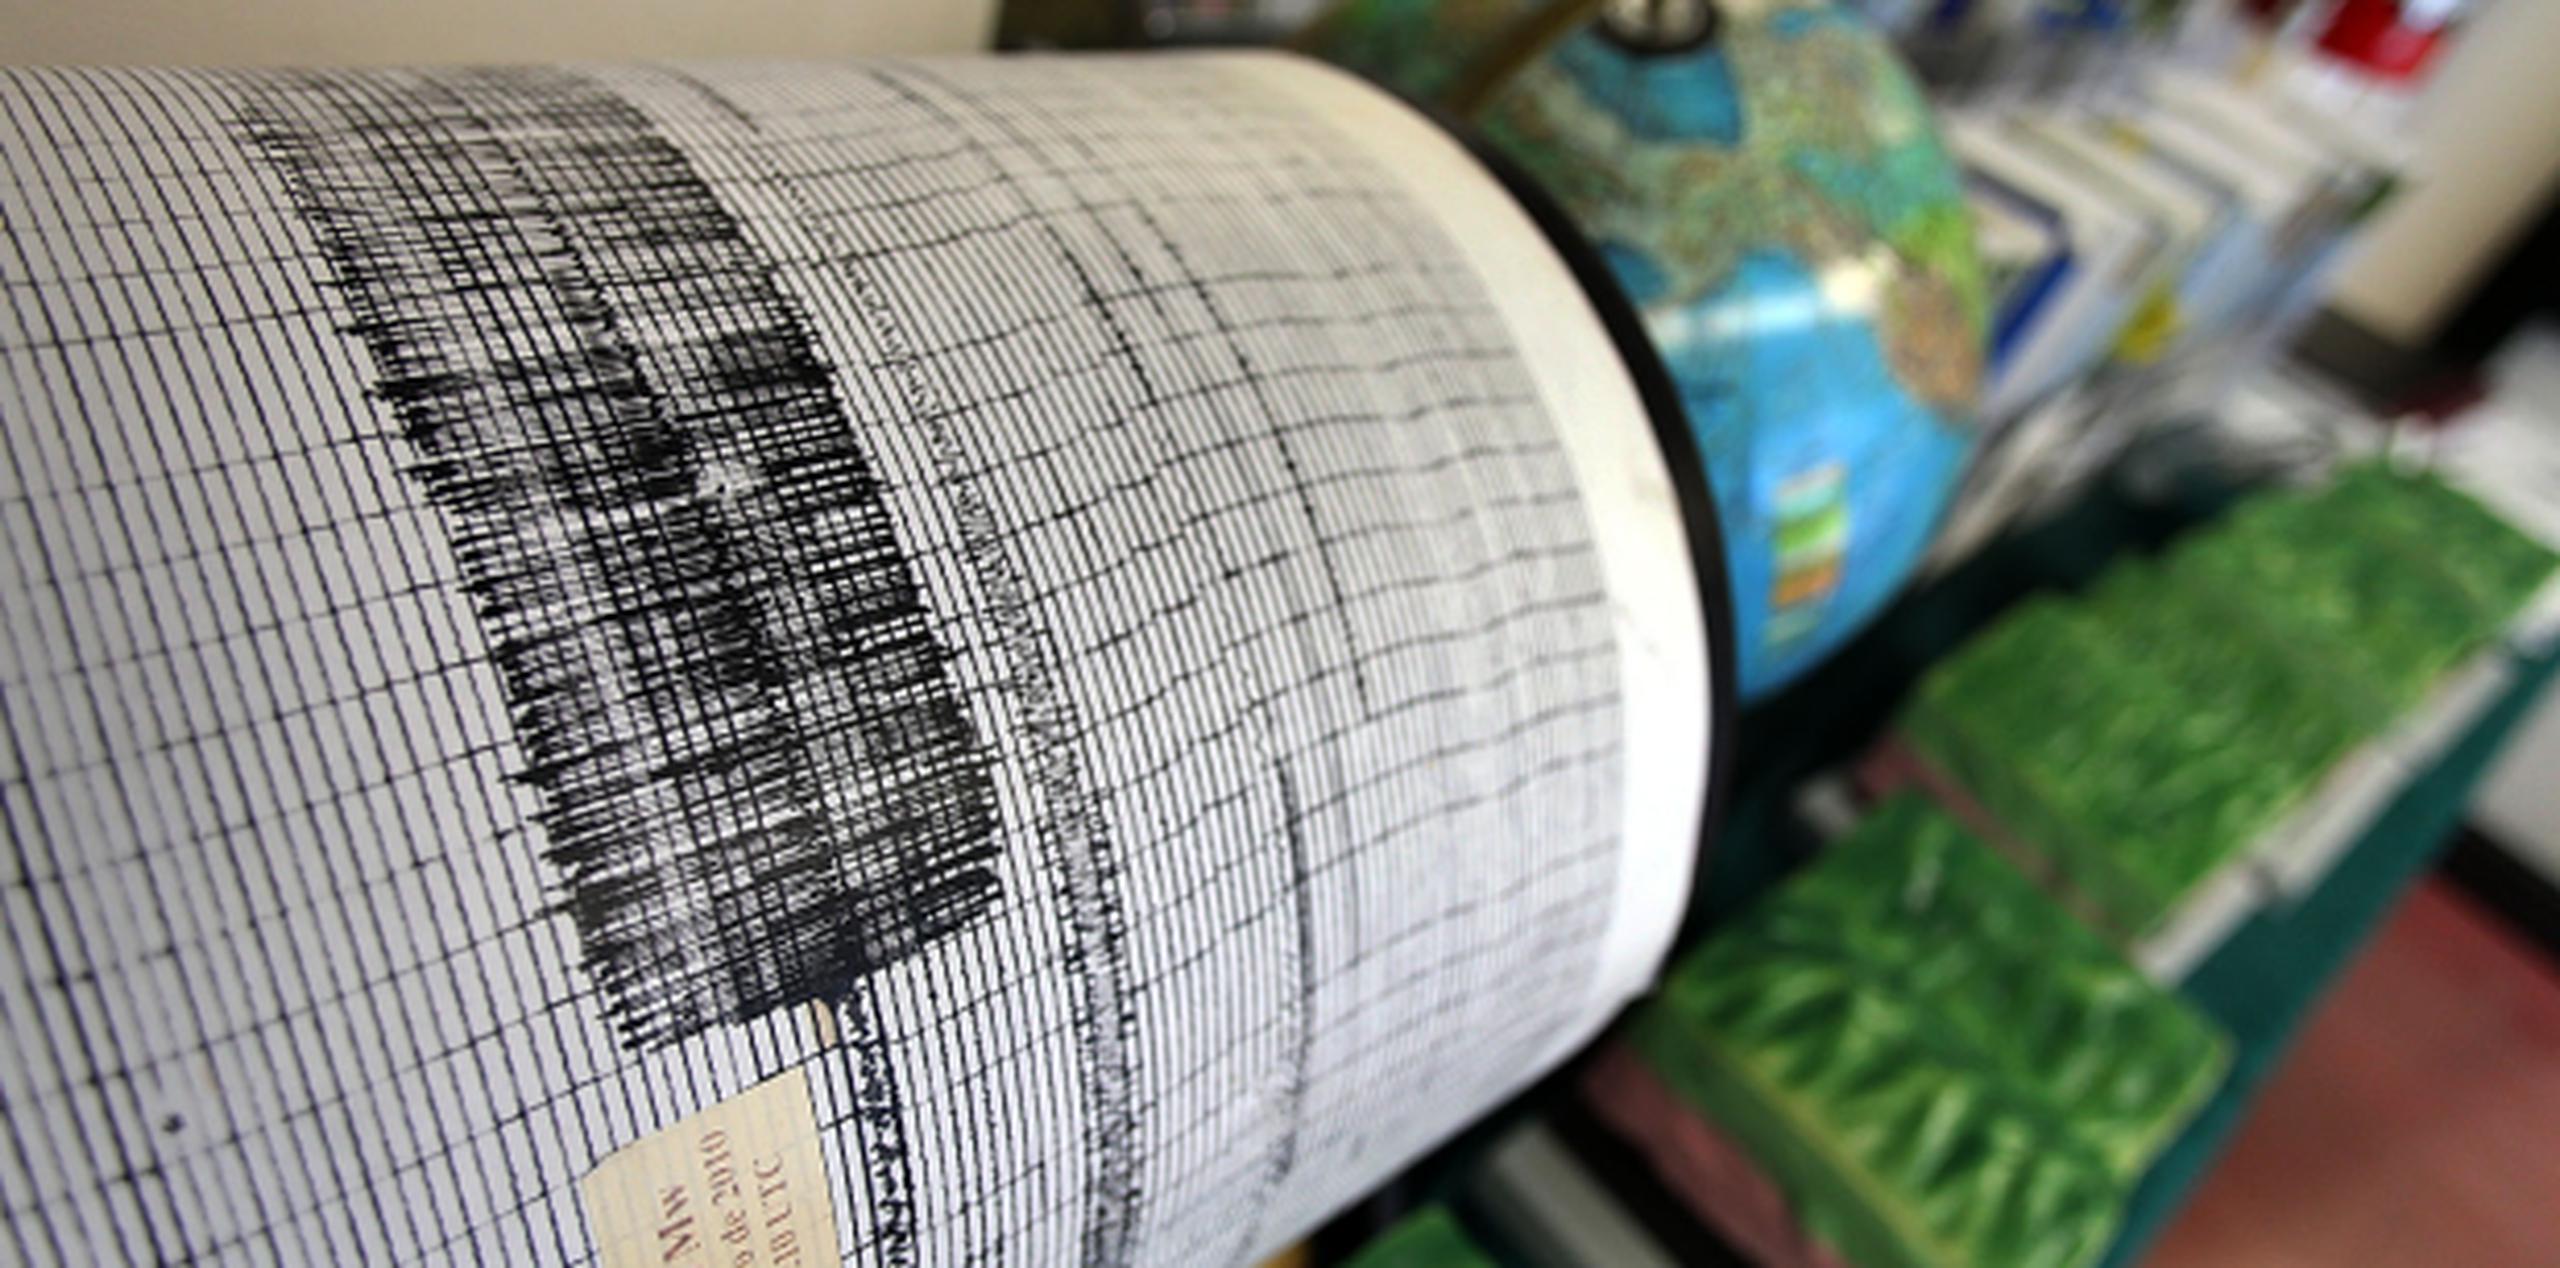 El terremoto tuvo una magnitud de unos 5 grados en la escala Richter. (Archivo)